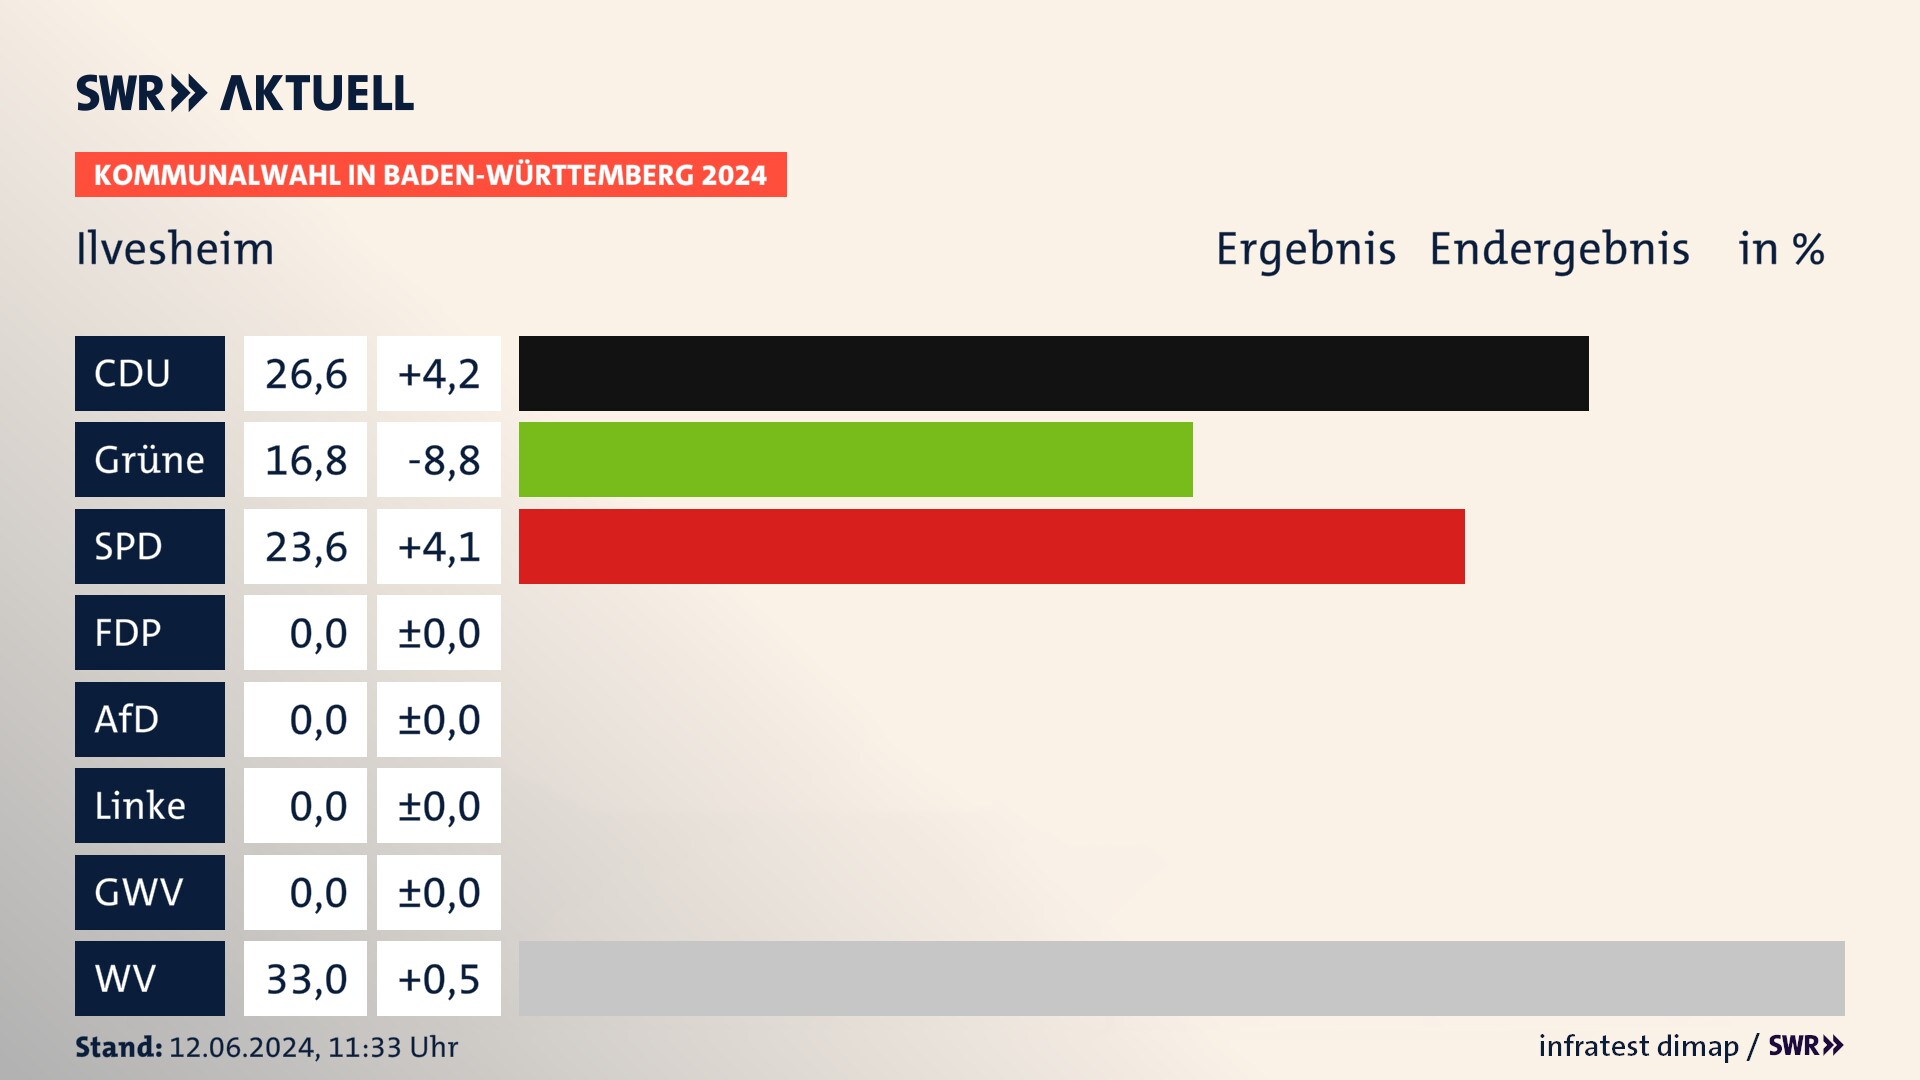 Kommunalwahl 2024 Endergebnis Zweitstimme für Ilvesheim. In Ilvesheim erzielt die CDU 26,6 Prozent der gültigen  Stimmen. Die Grünen landen bei 16,8 Prozent. Die SPD erreicht 23,6 Prozent. Die Wählervereinigungen kommen auf 33,0 Prozent.